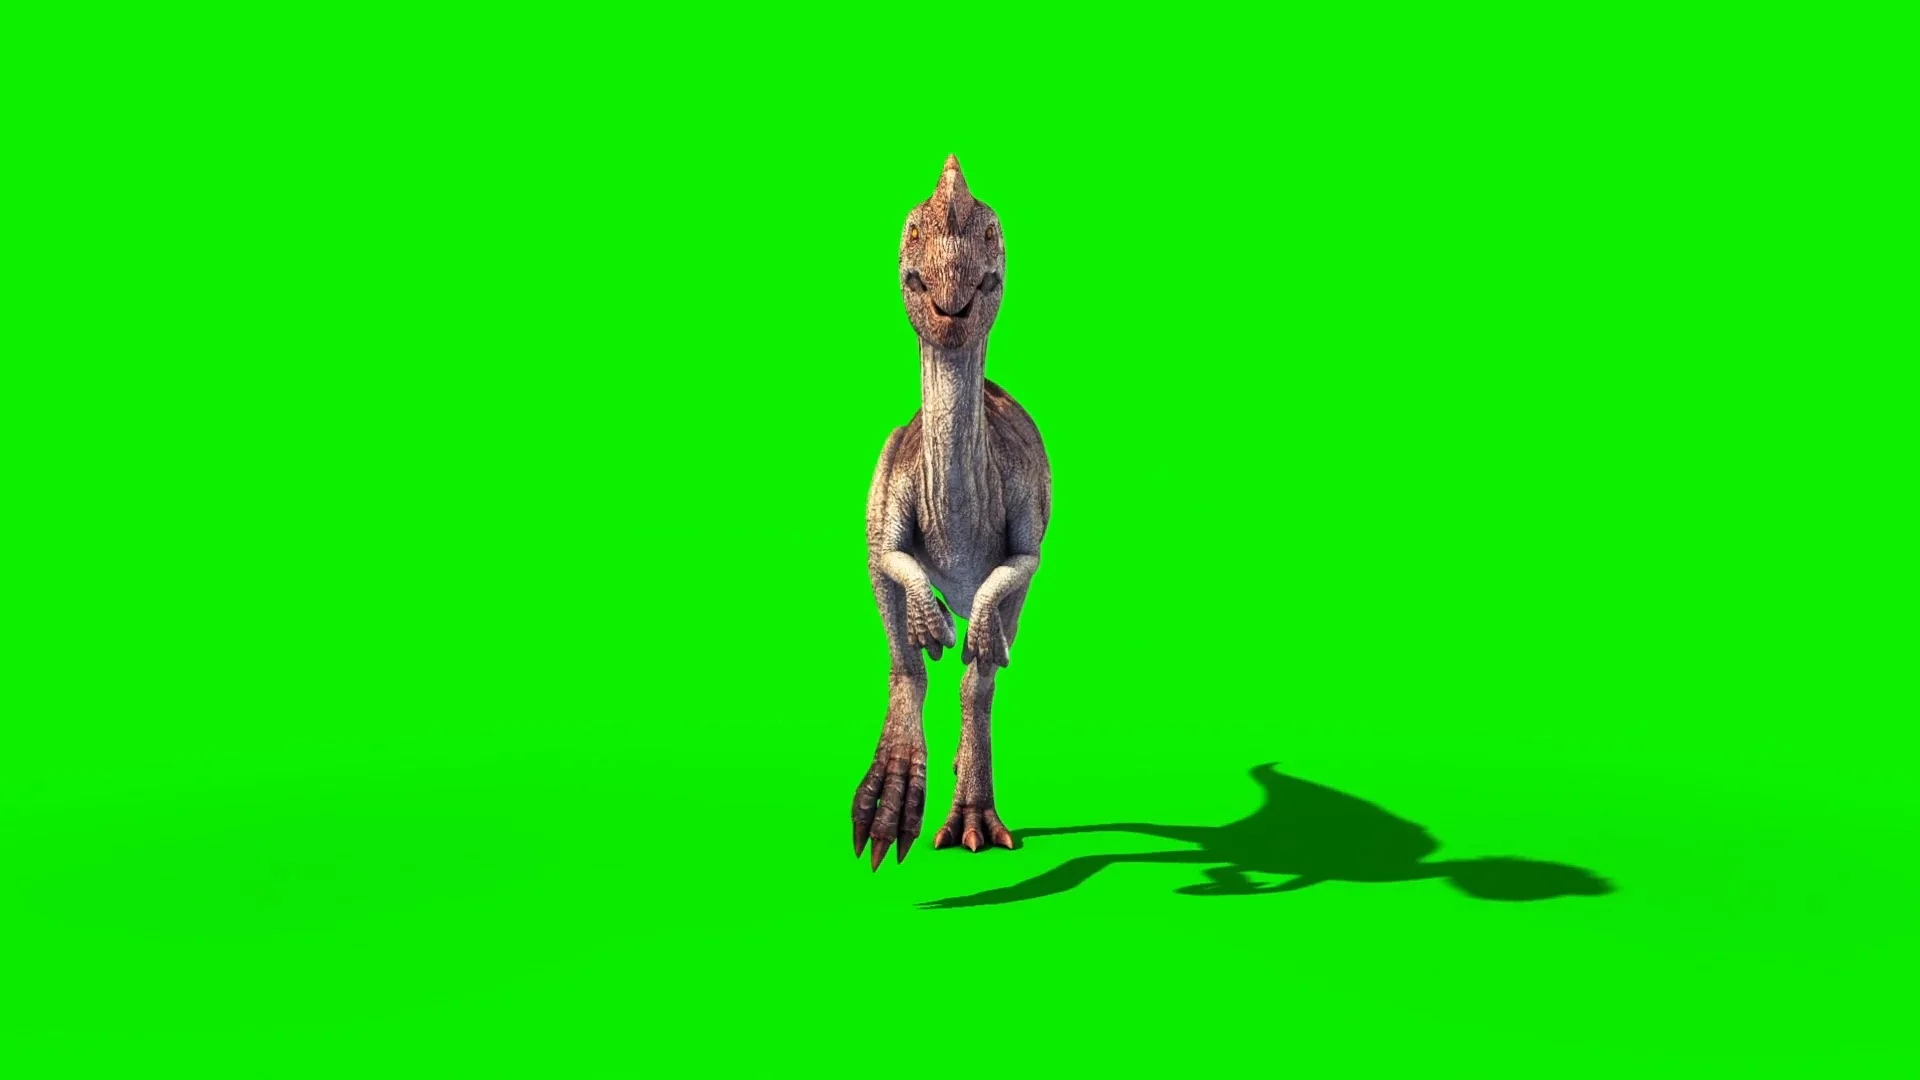 Dinosaur run cycle on Vimeo